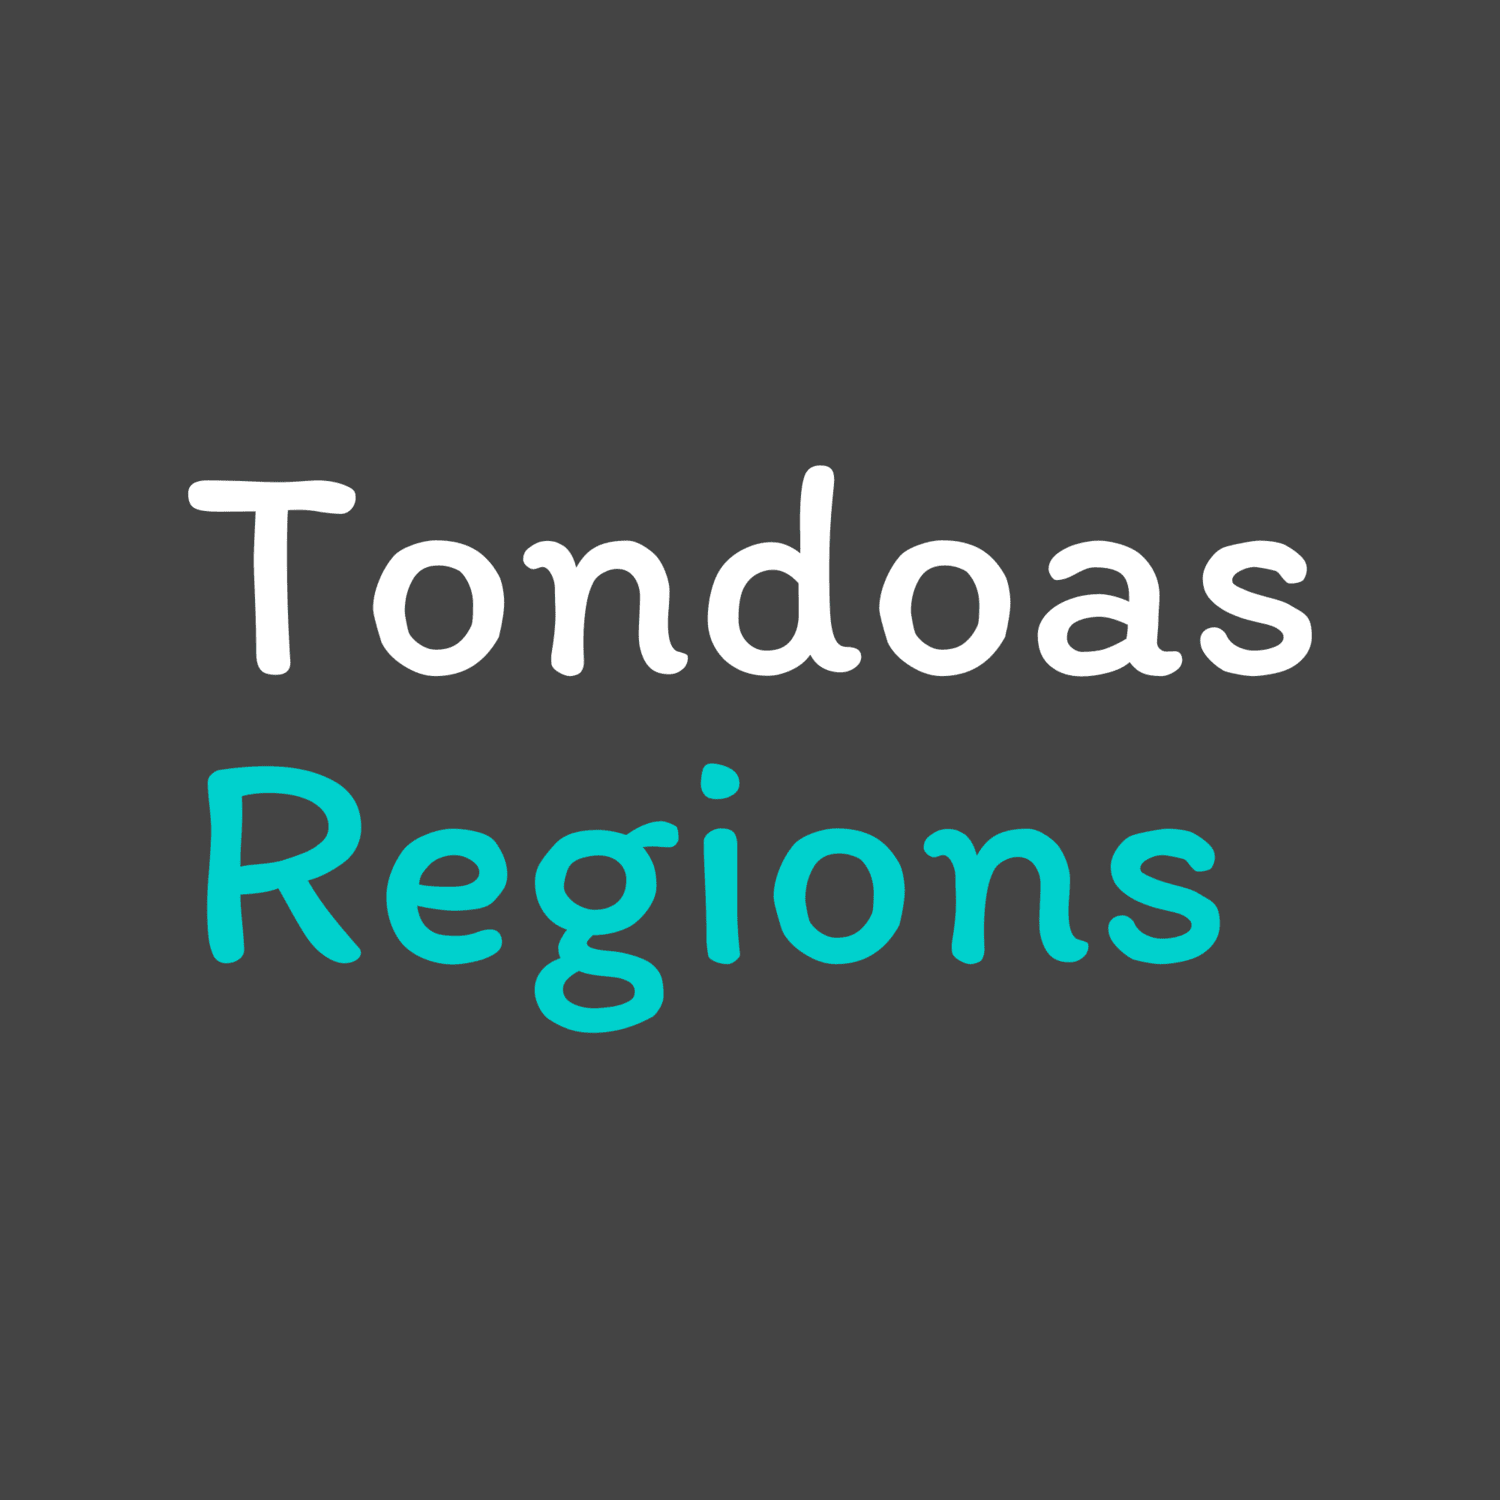 tondoas-regions